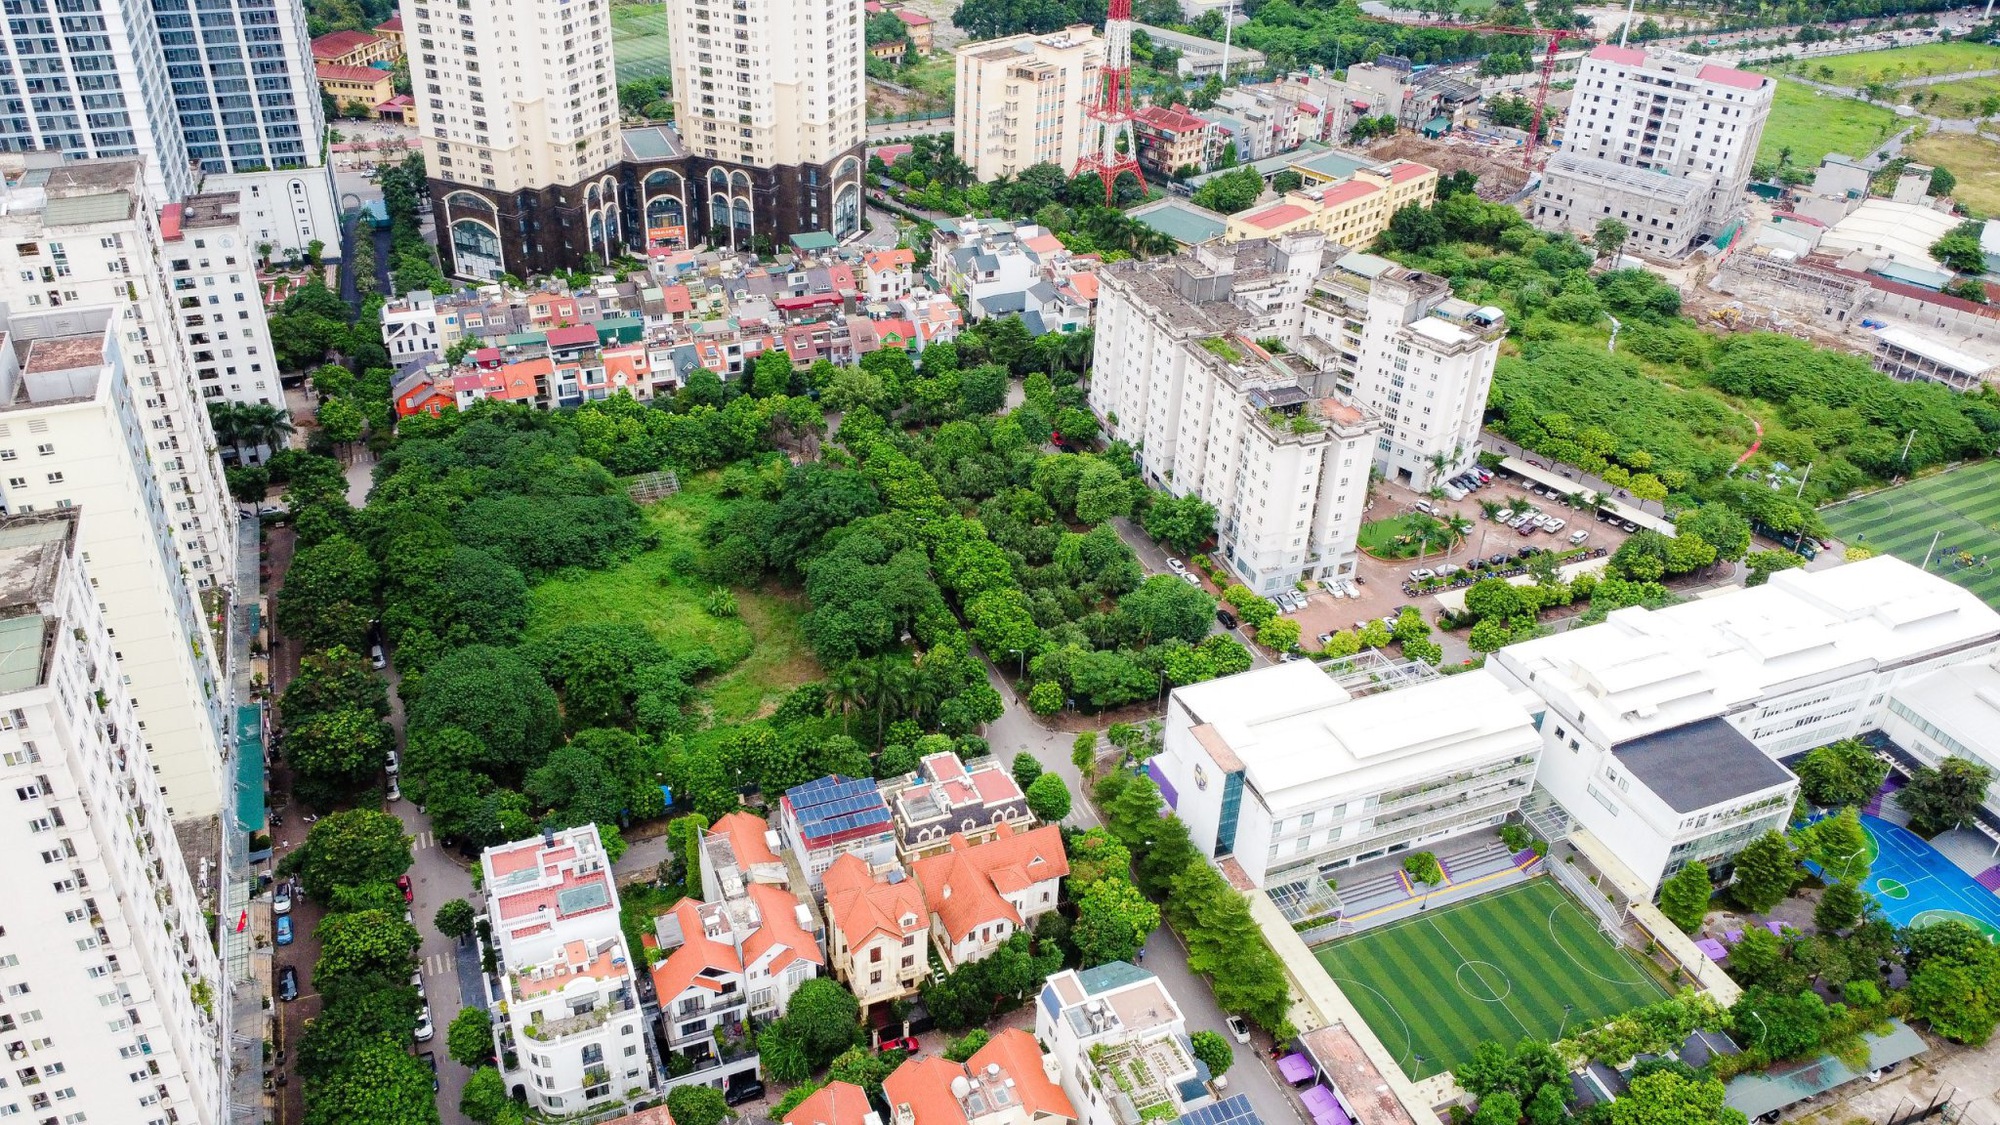 “Hô biến” quỹ đất 20% thành biệt thự triệu đô, cao ốc tại Khu đô thị mới Trung Văn - Ảnh 4.